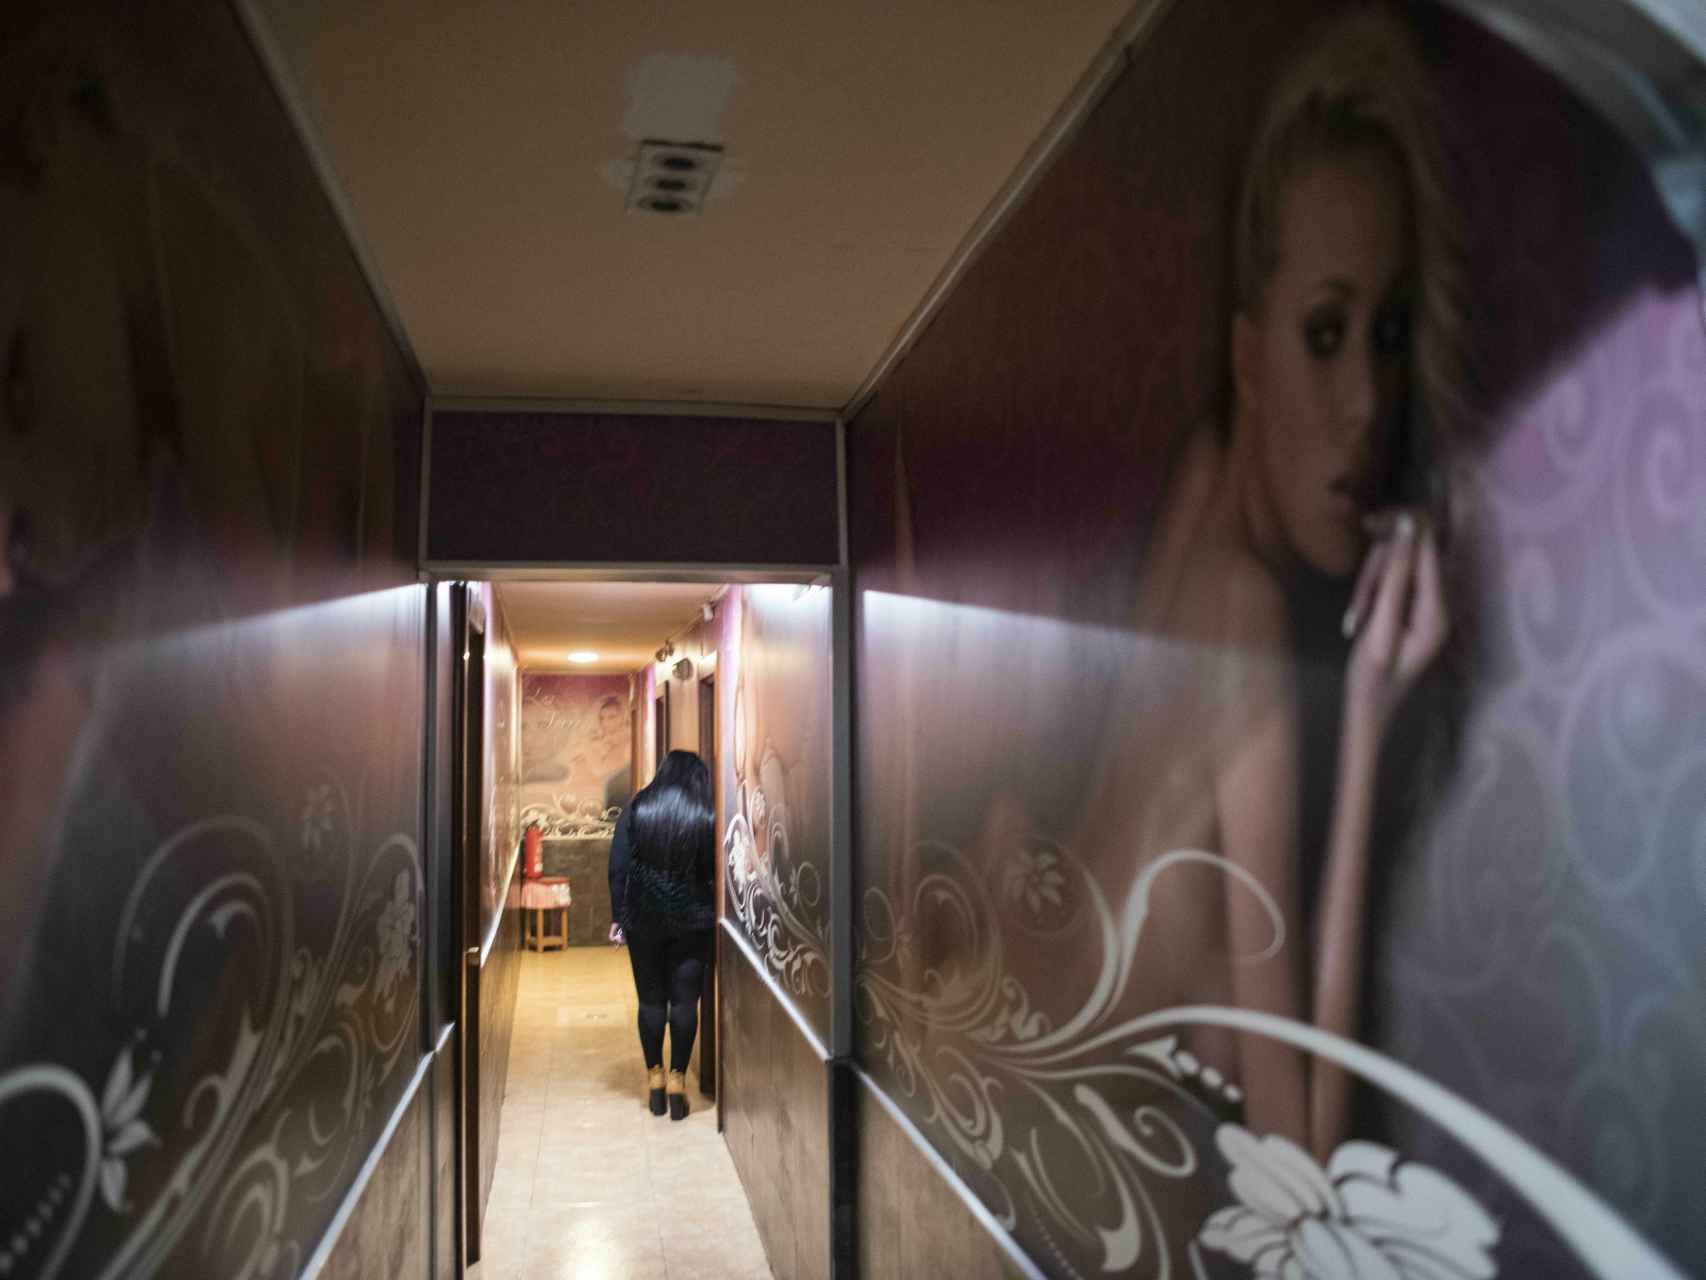 Una de las prostitutas de Las Torres entrando a su habitación.